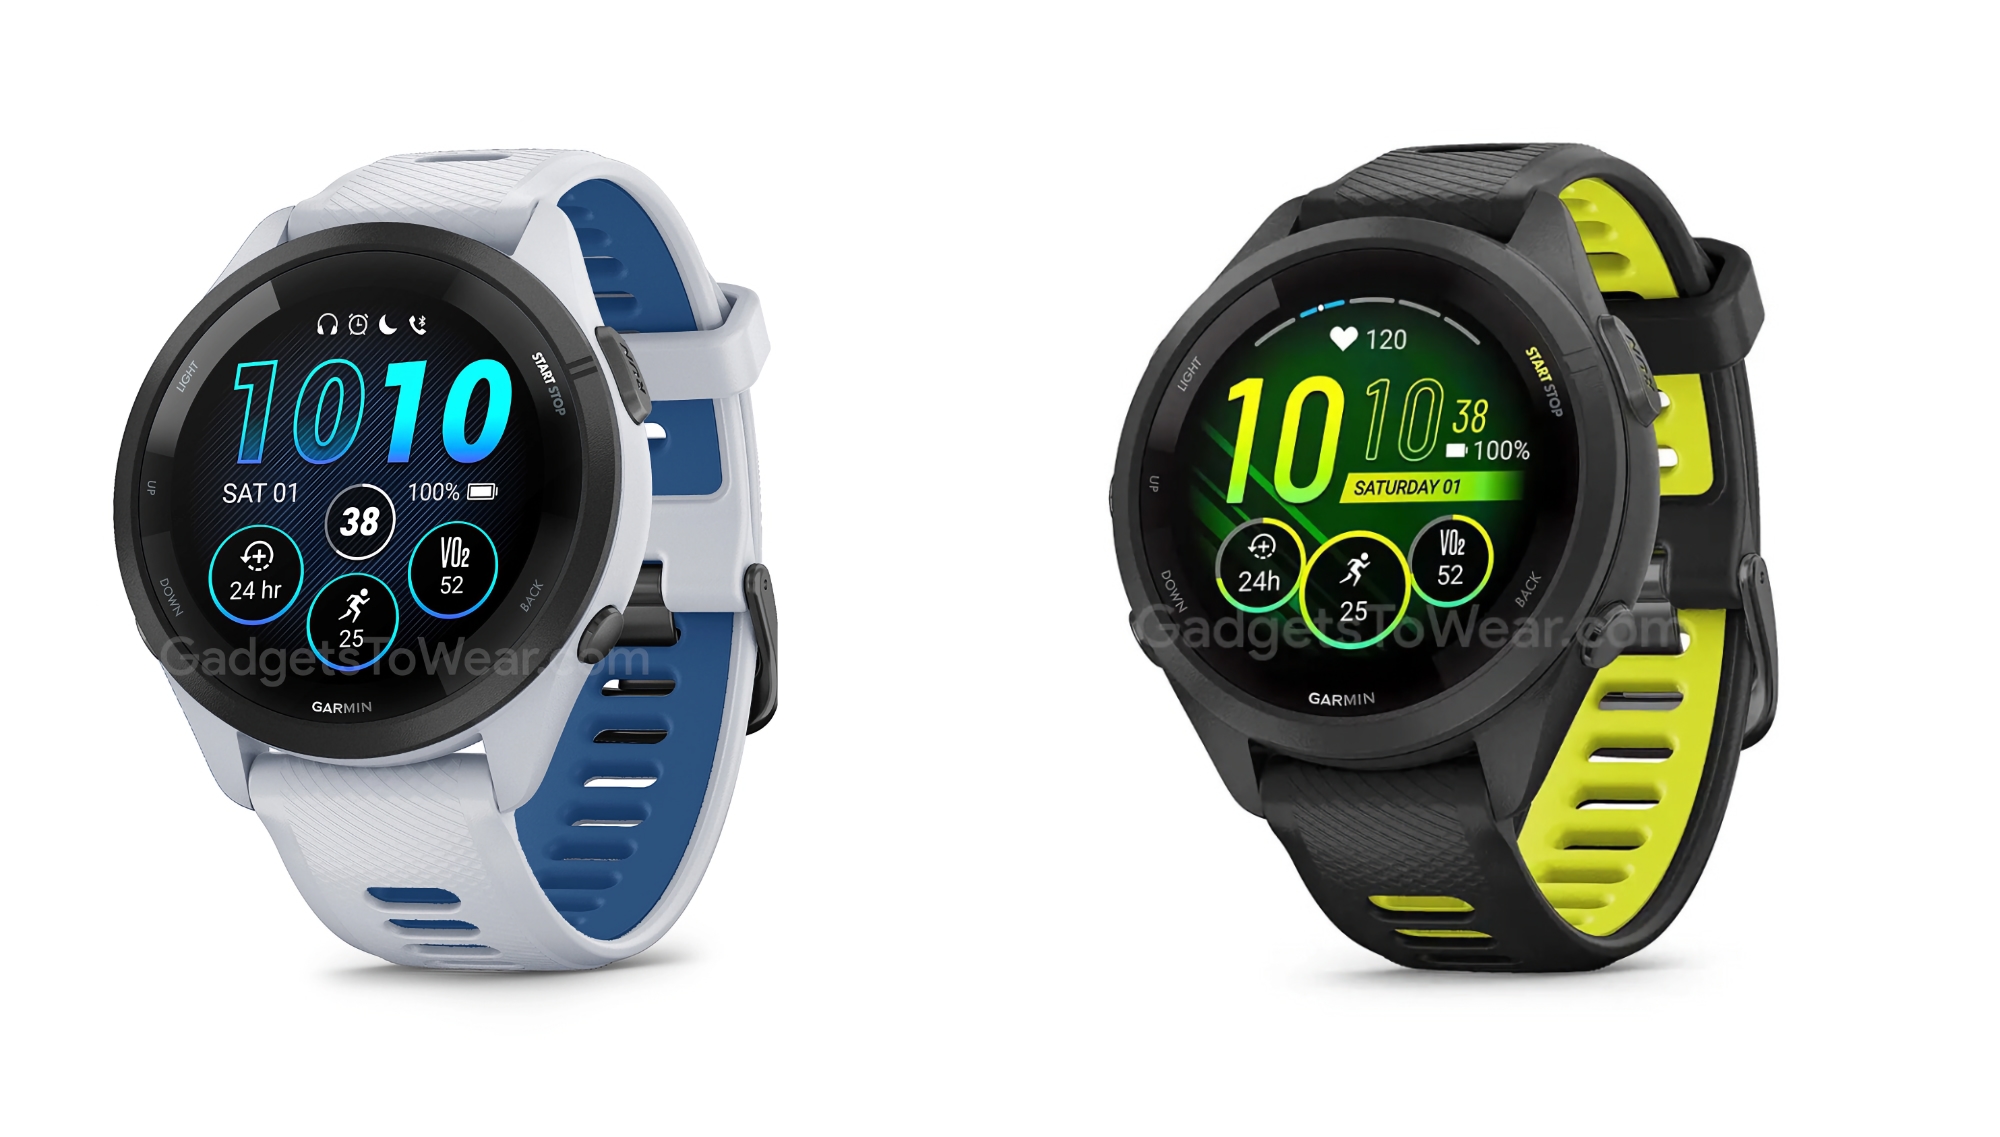 Garmin lancia gli smartwatch sportivi Forerunner 265 e Forerunner 265s con display AMOLED e autonomia fino a 13 giorni